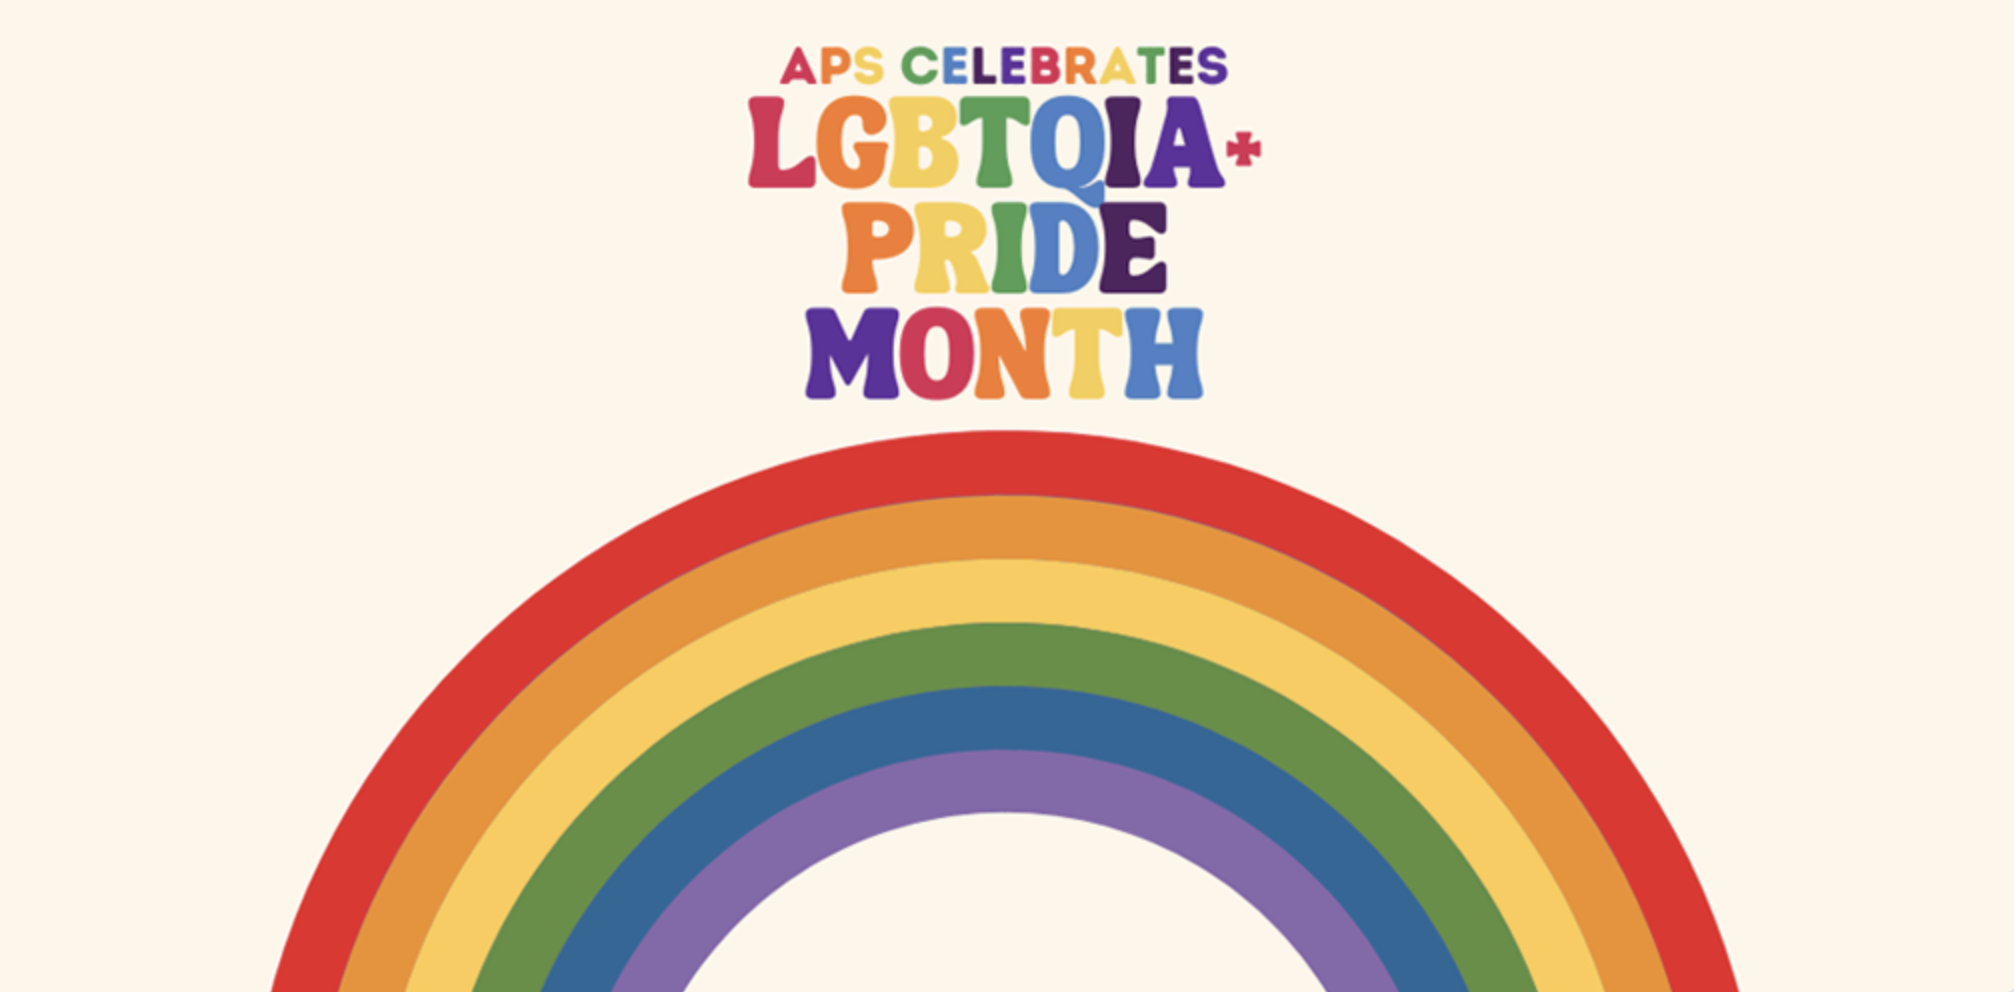 APS Celebrates Pride Month